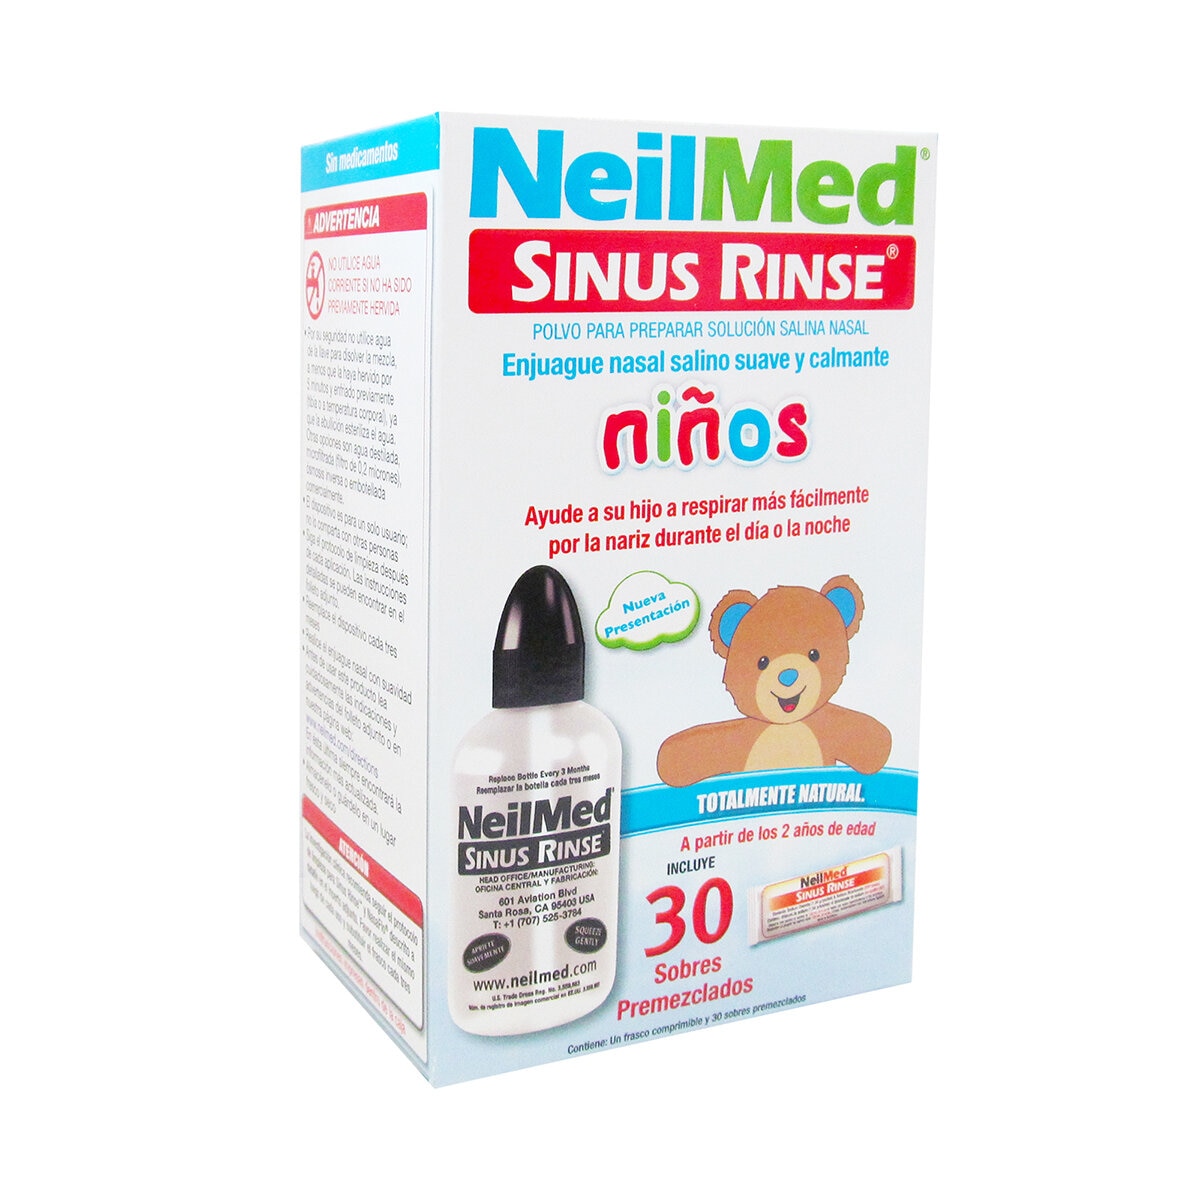 Sinus Inhalaciones, 1 Frasco De 30 Ml — Mi Farmacia Premium